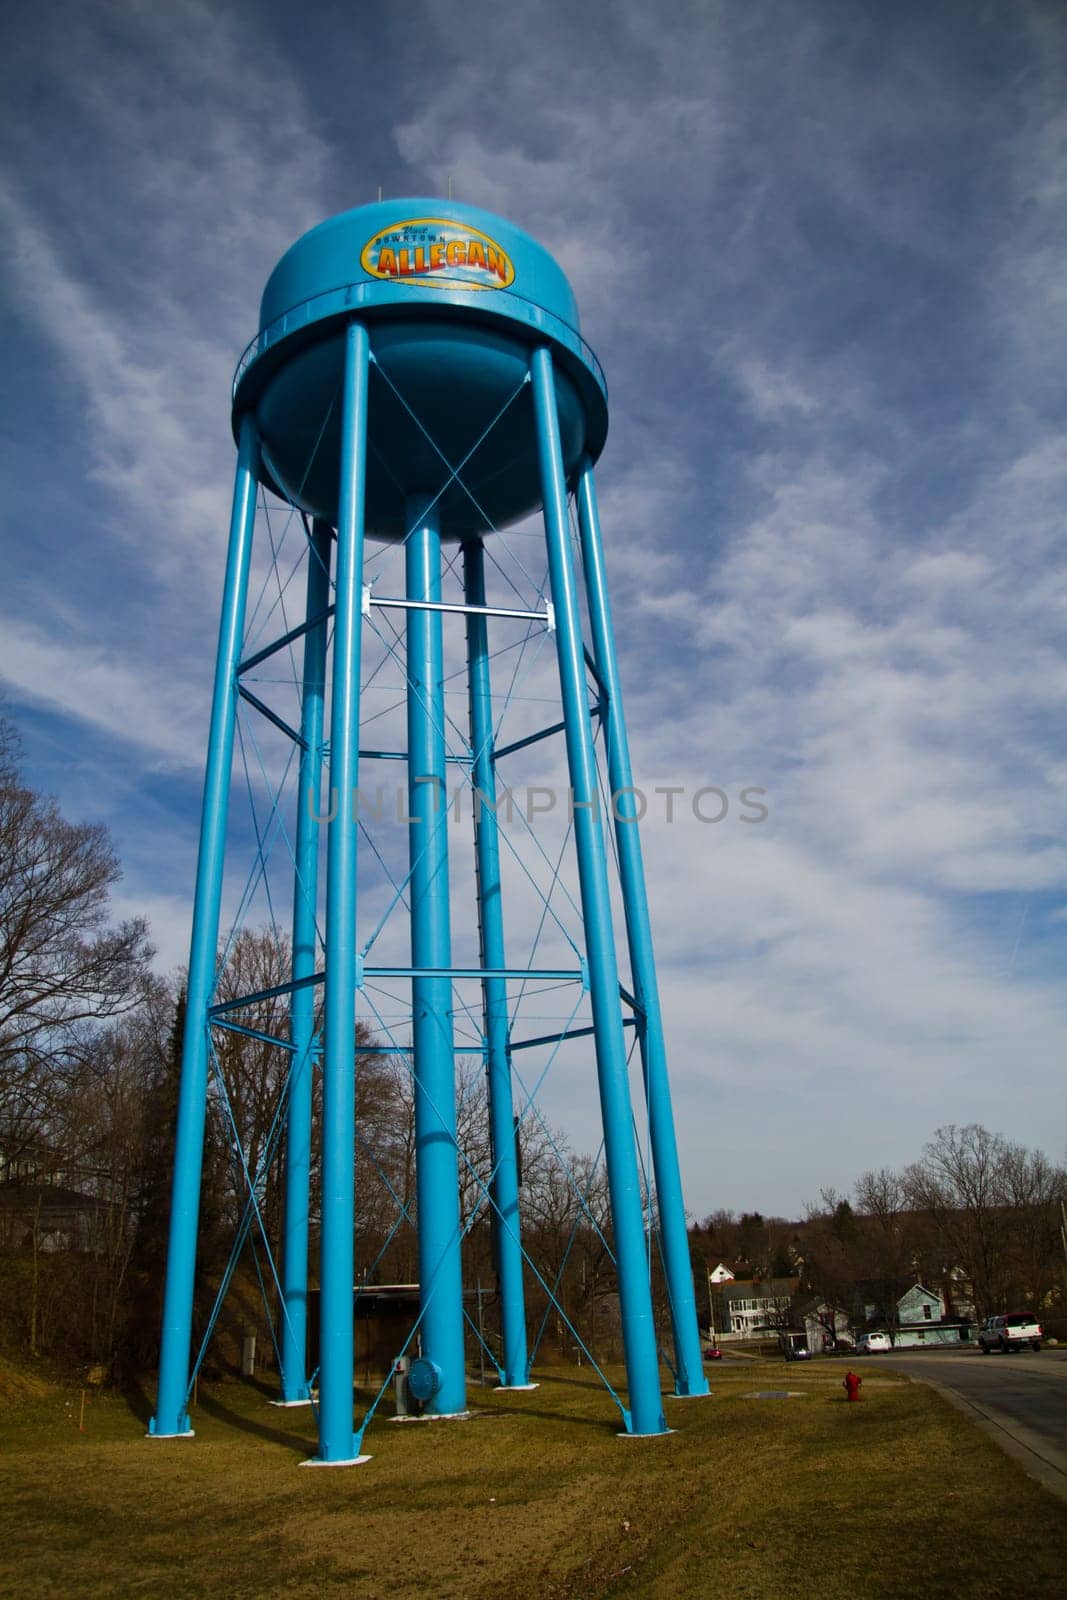 Blue Allegan Water Tower Against Dynamic Sky in Semi-Rural Community by njproductions